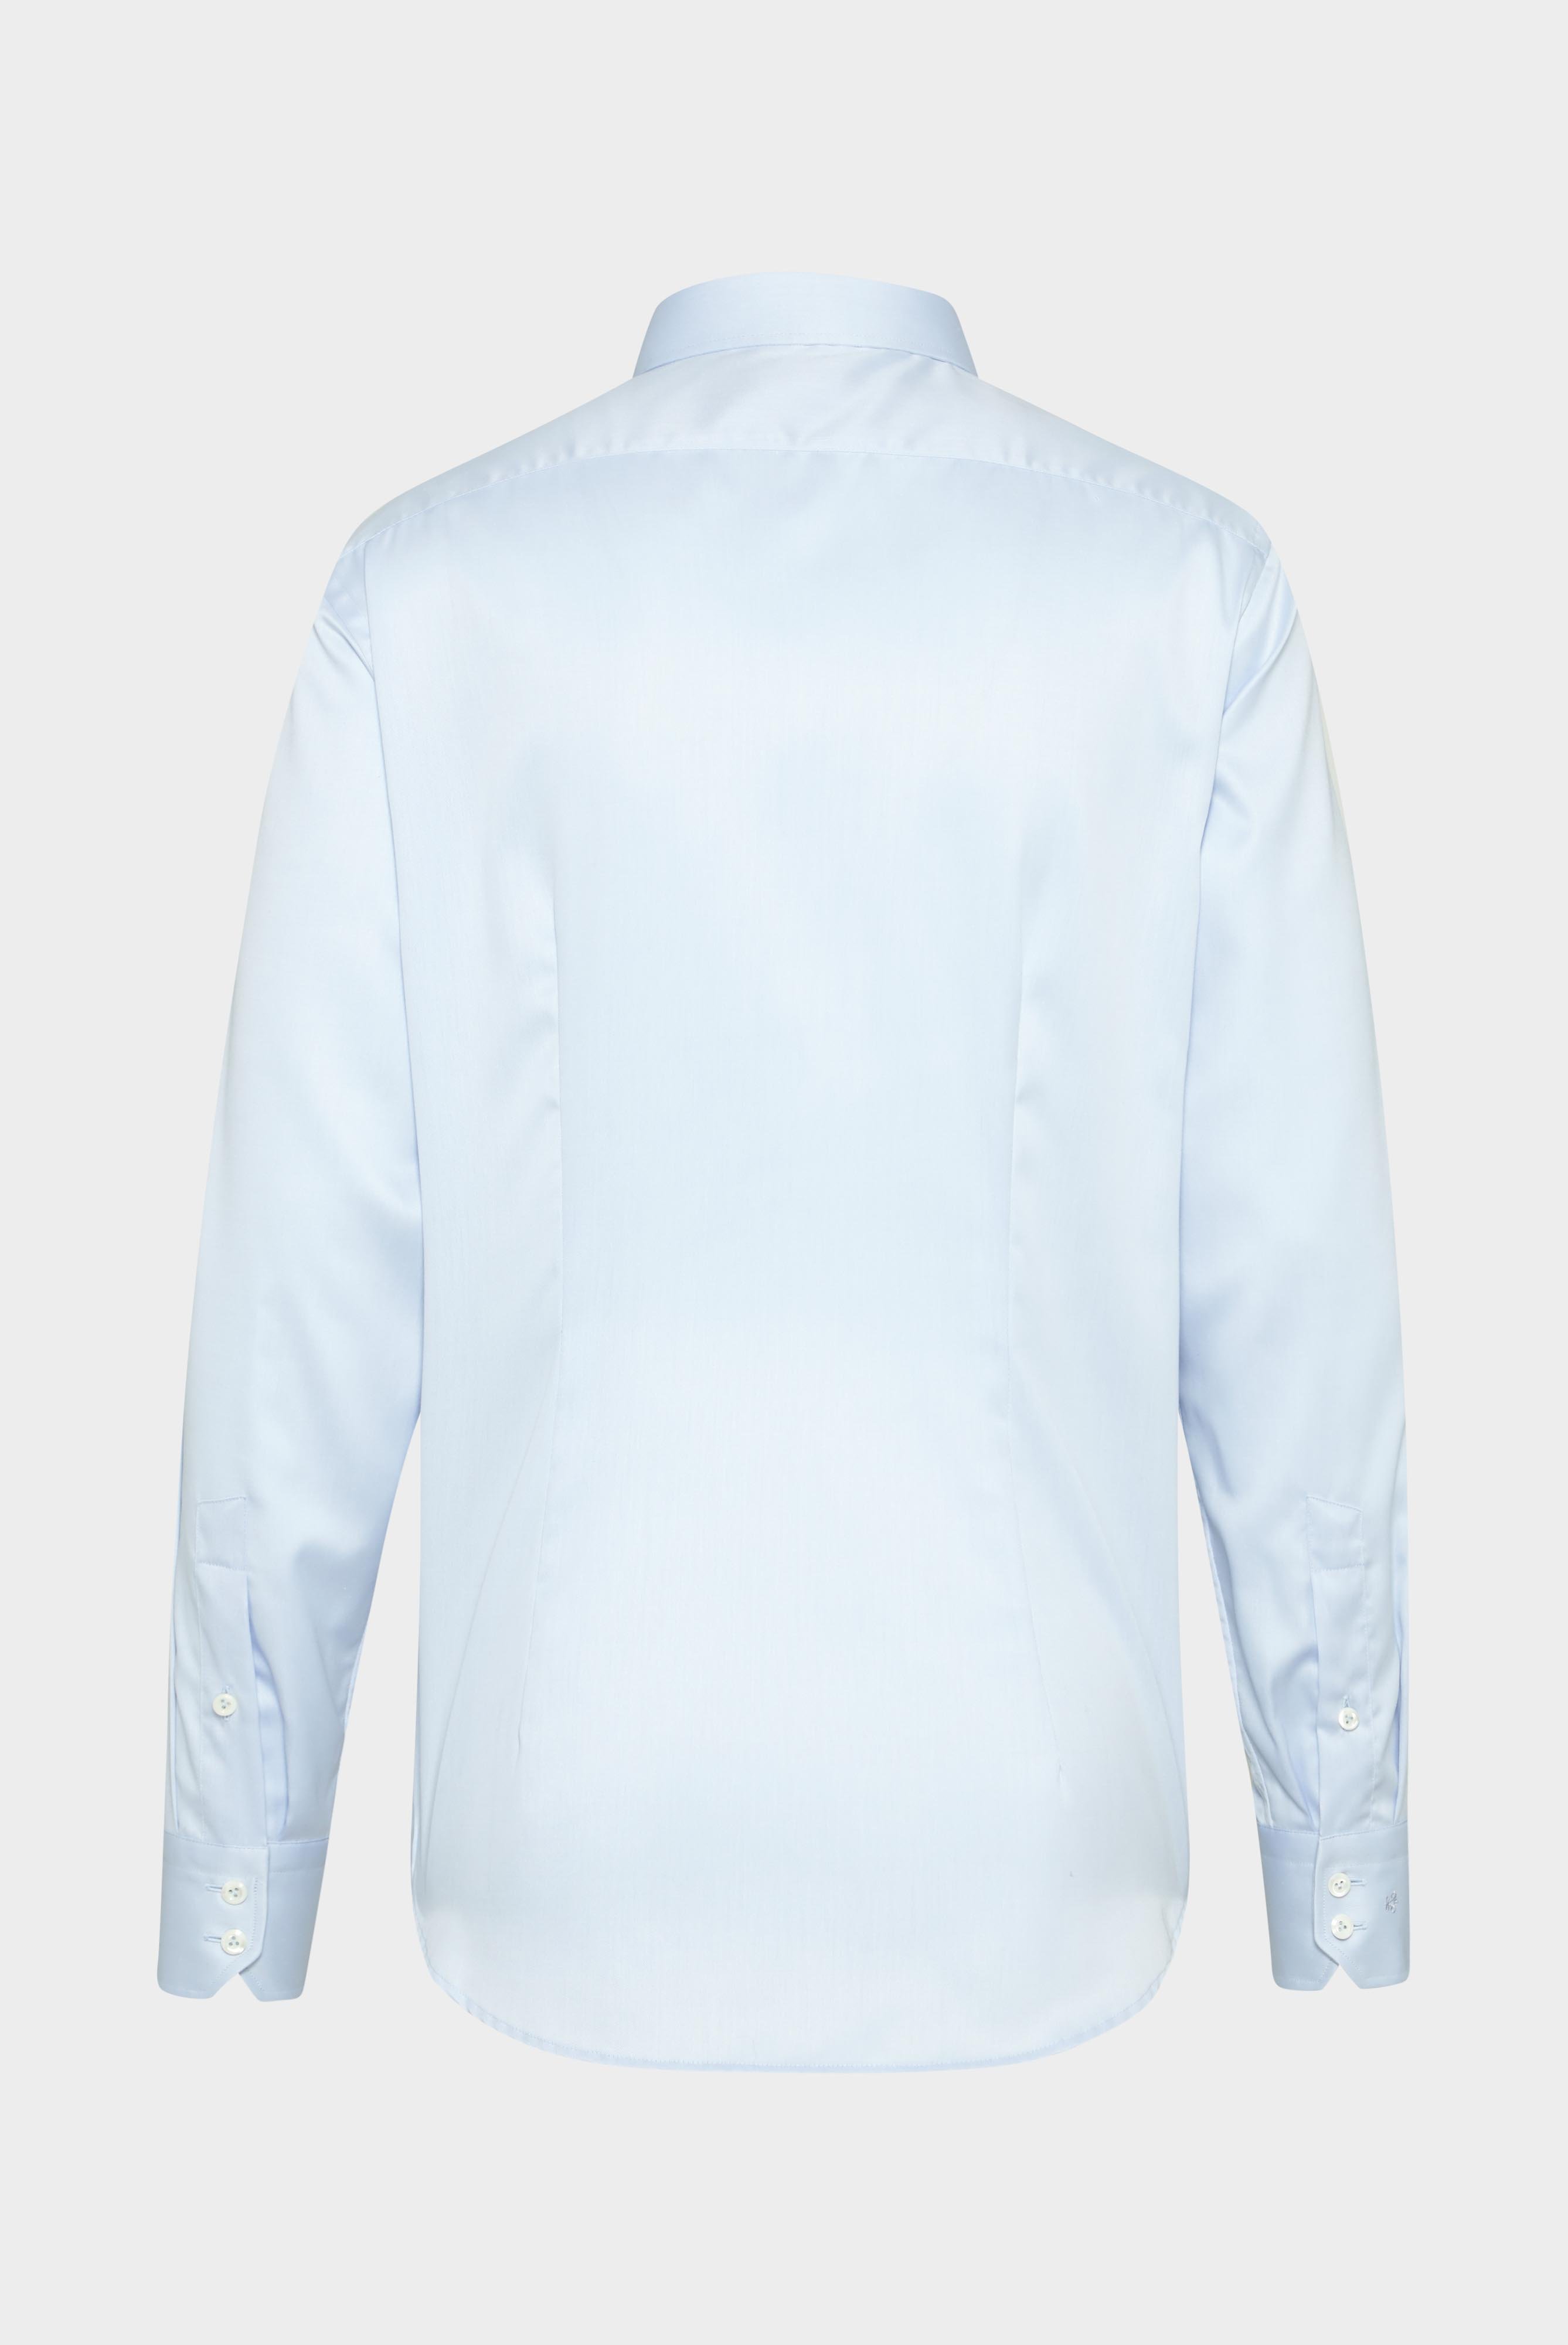 Bügelleichte Hemden+Bügelfreies Twill Hemd Tailor Fit+20.2020.BQ.132241.720.37